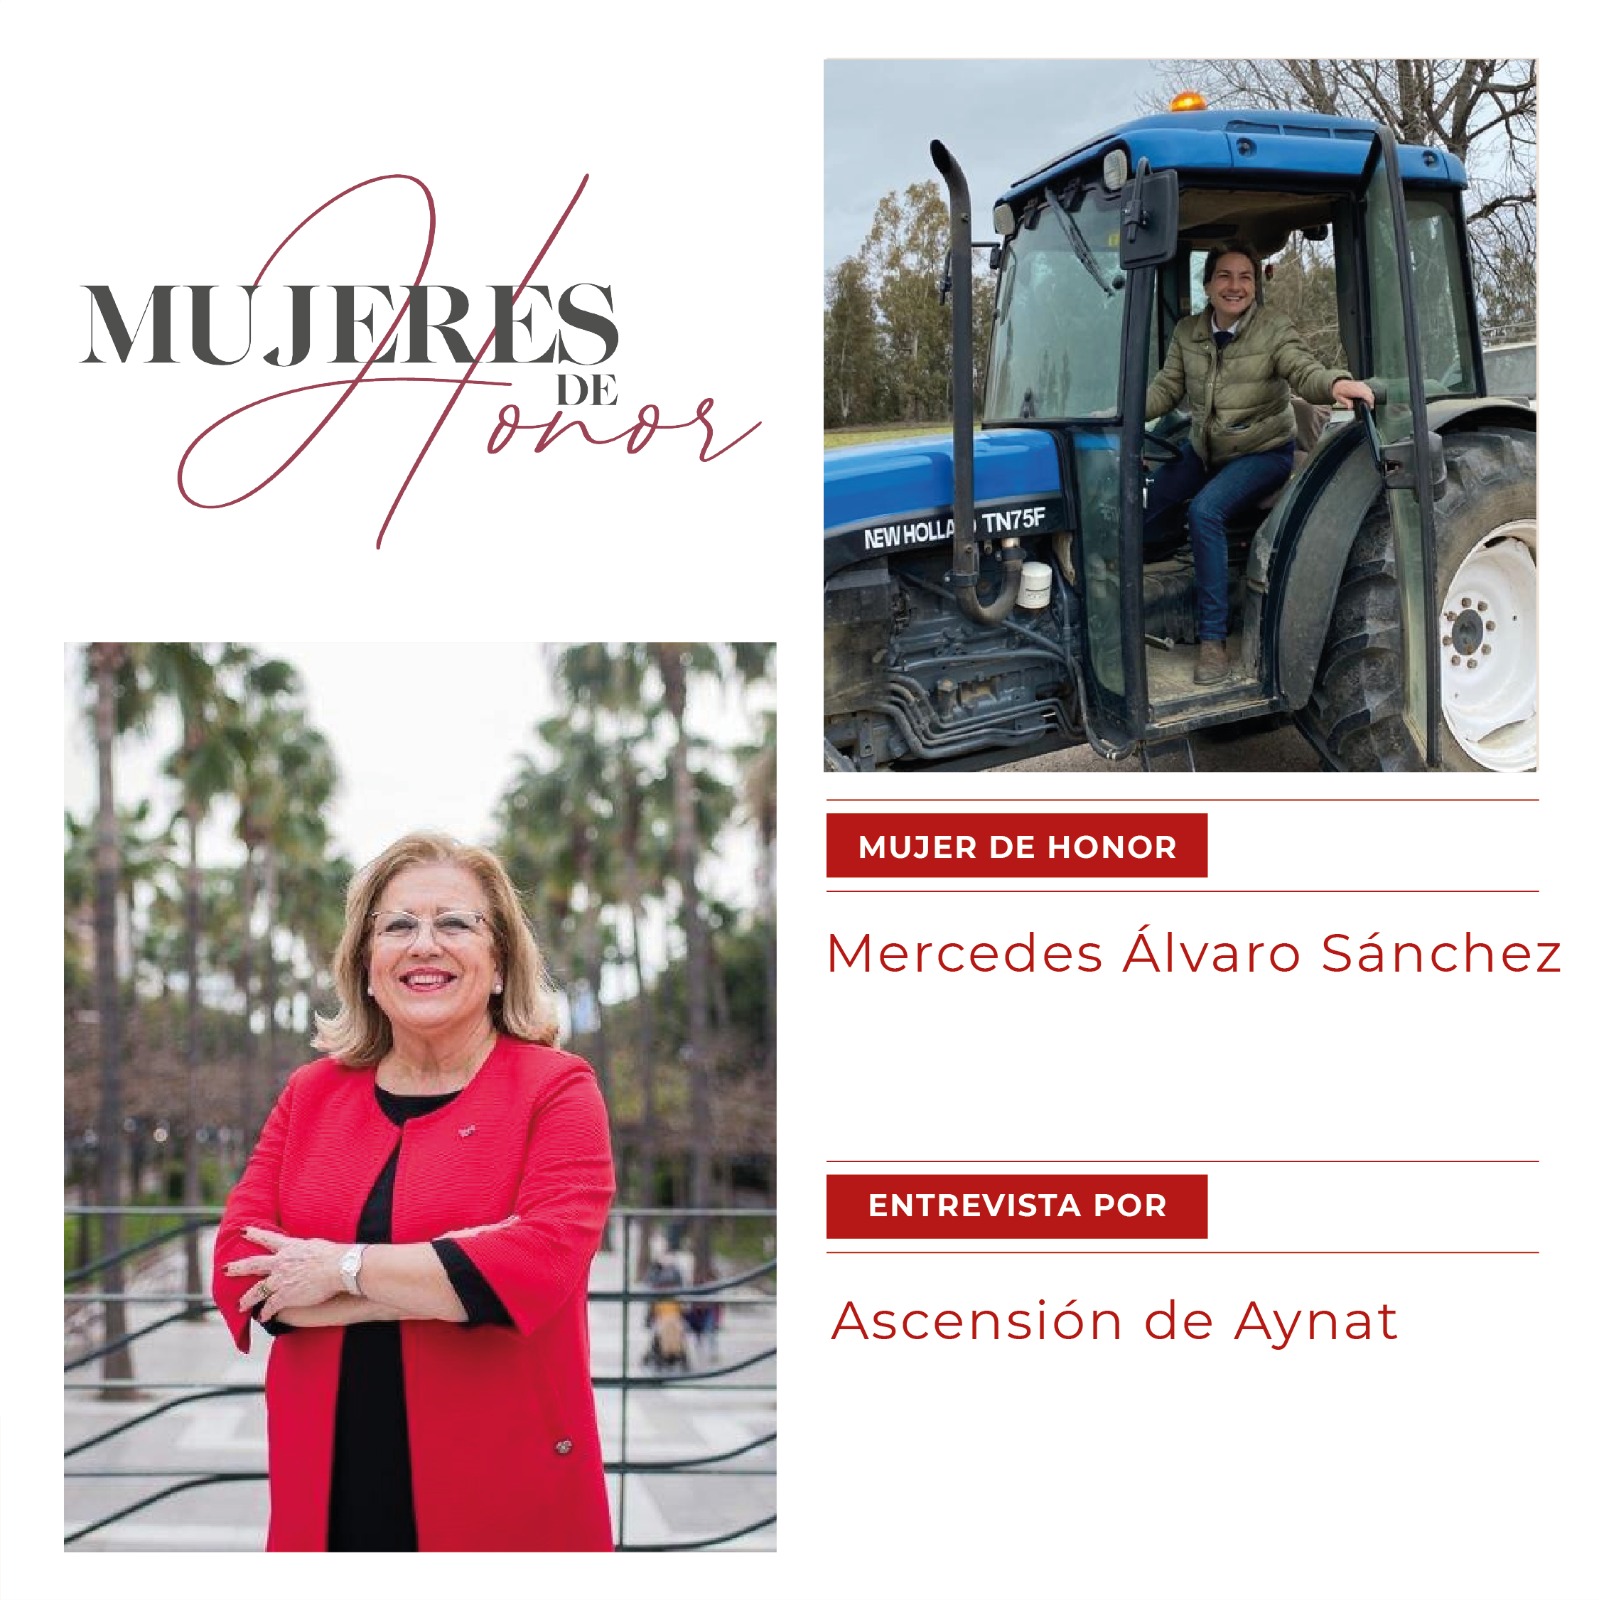 Mujeres de Honor Mercedes Alvaro